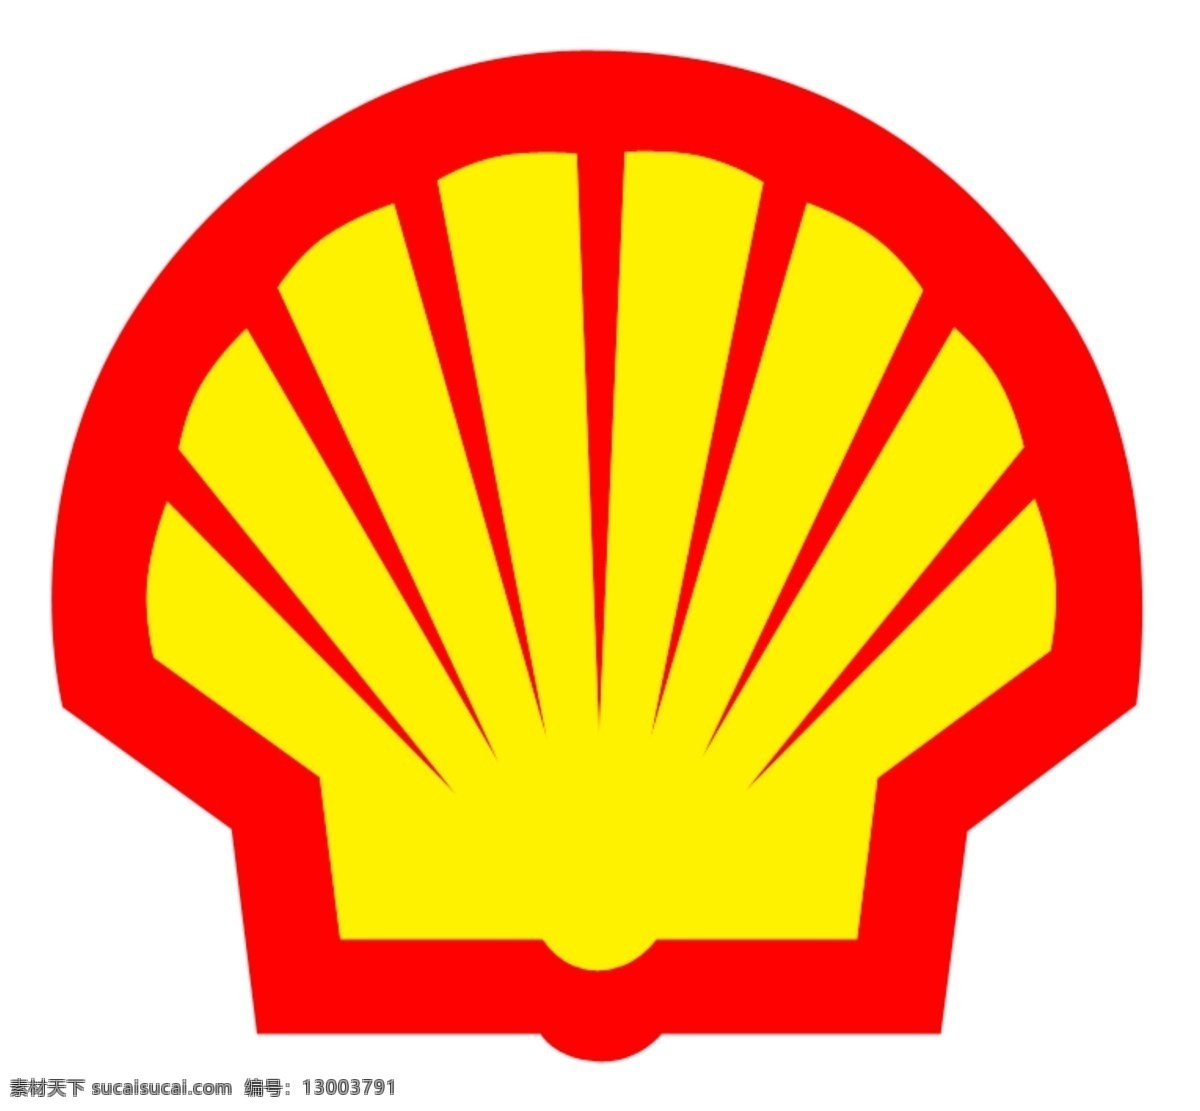 壳牌 润滑油 logo 标志 工业标志 红黄色标志 抽象标志 vi设计 广告设计模板 源文件